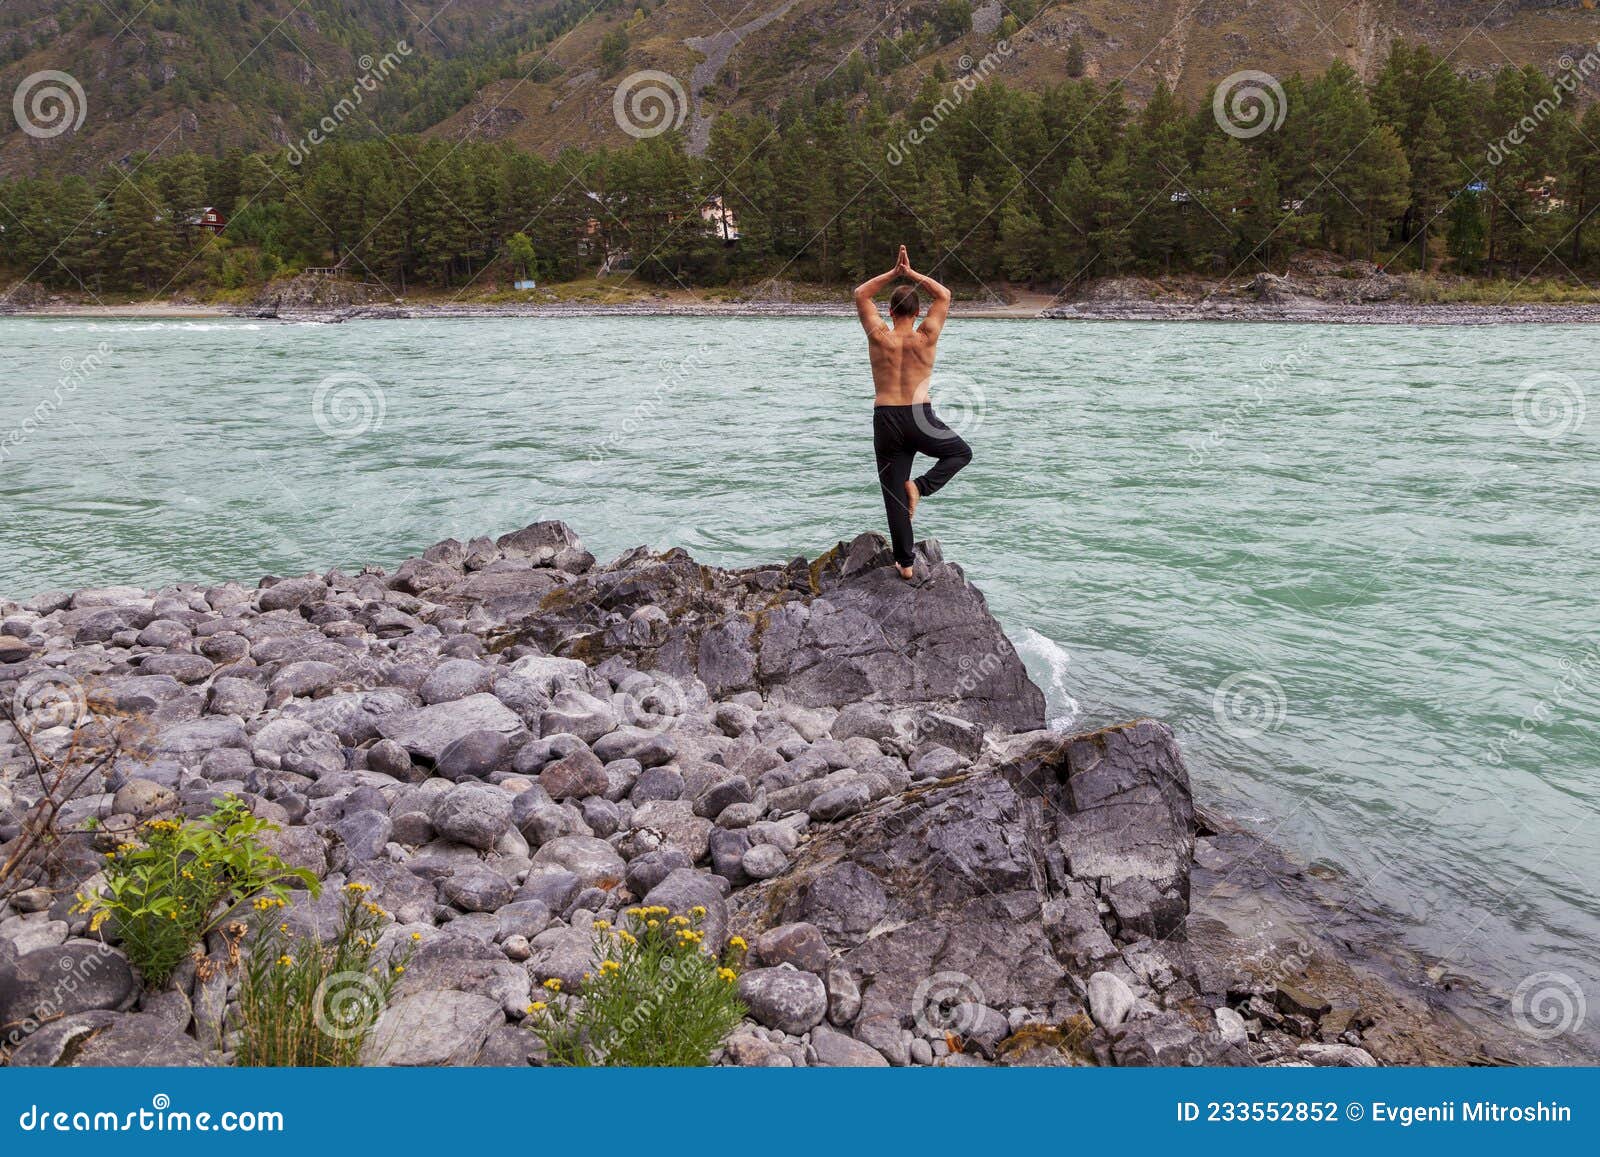 man doing yoga river bank tree pose %E0%A4%B5%E0%A5%83%E0%A4%95%E0%A5%8D%E0%A4%B7 original hindi word balance standing one leg 233552852